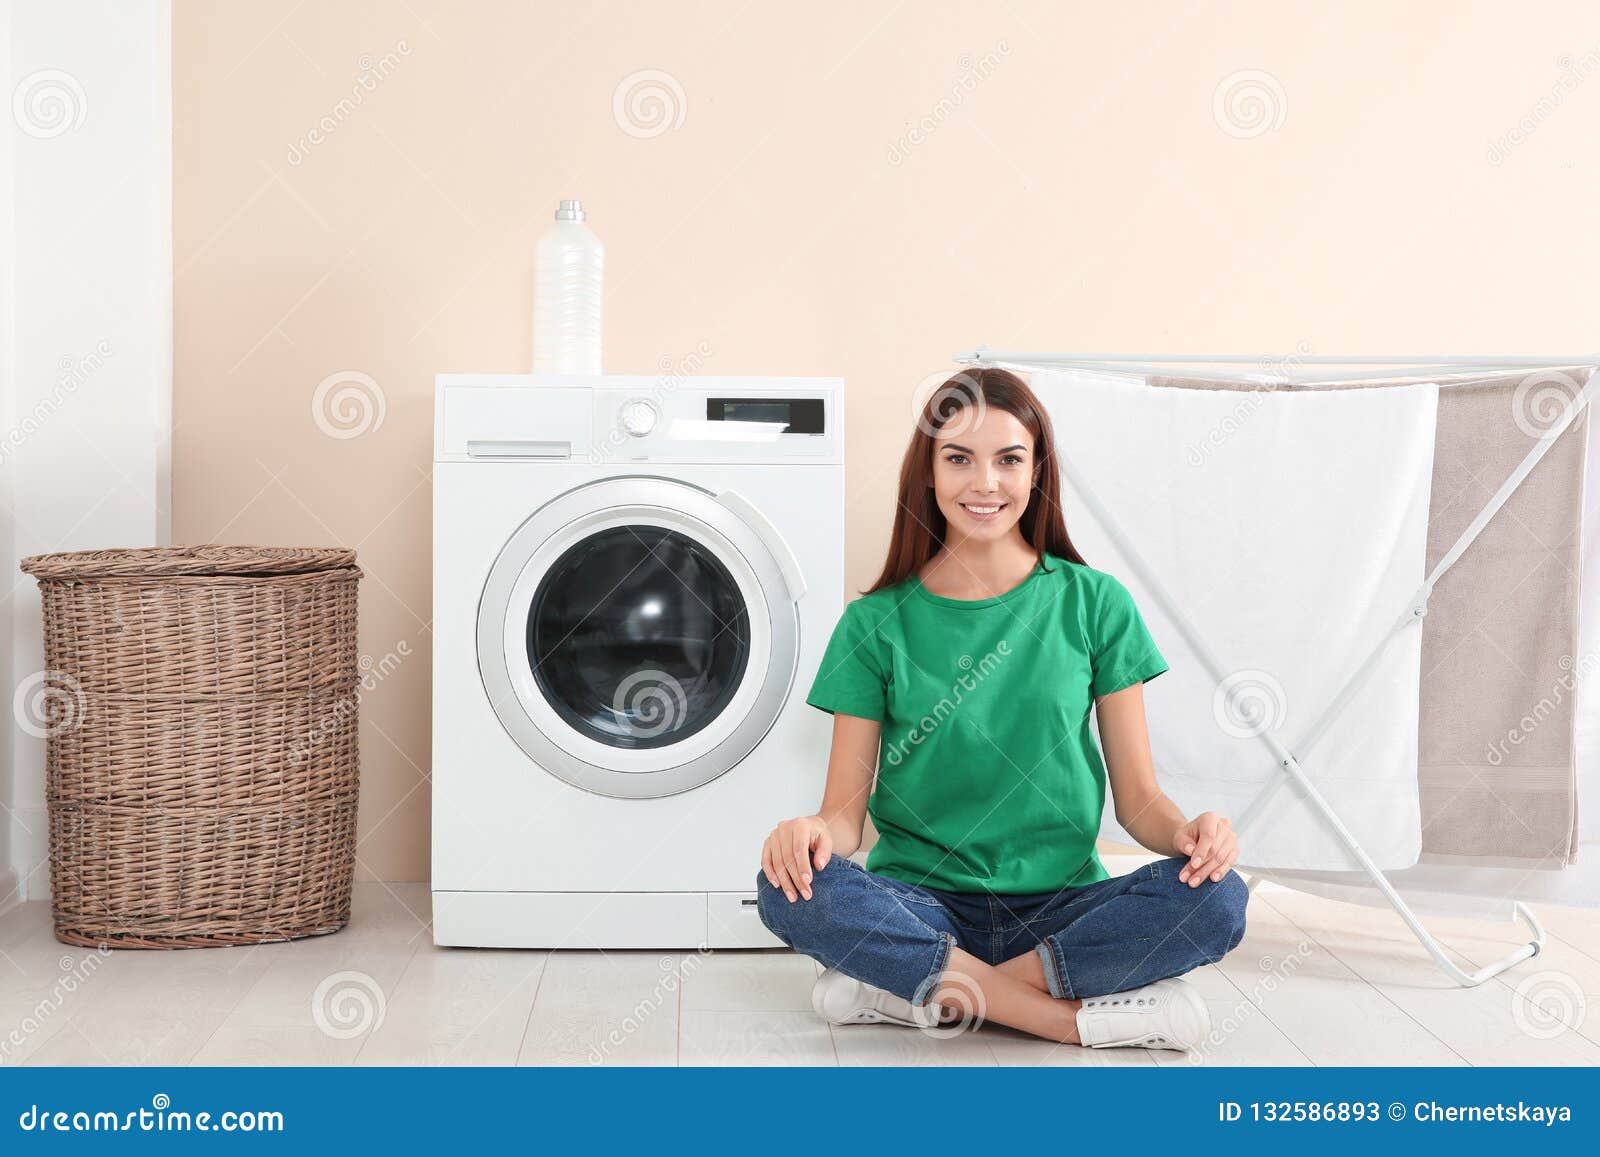 Laundry day. Женщина возле стиральной машинки. Женщина возле больших стиральных машин. Хозяйка возле стиральной машины. Стиральная машина в интерьере.